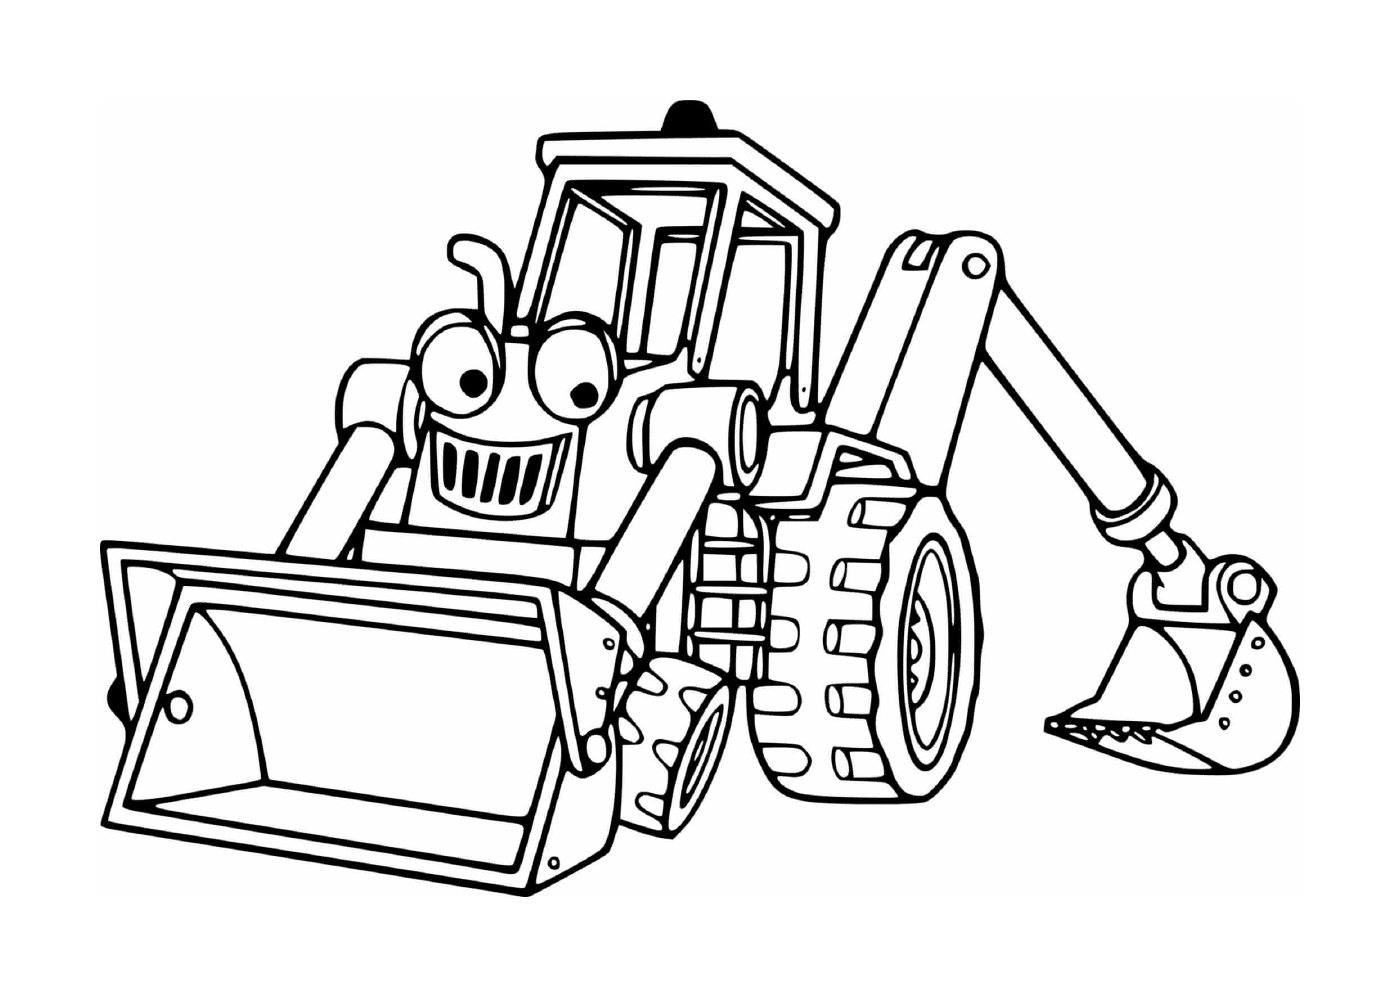   Tracteur-pelle utilisé sur un chantier de construction 